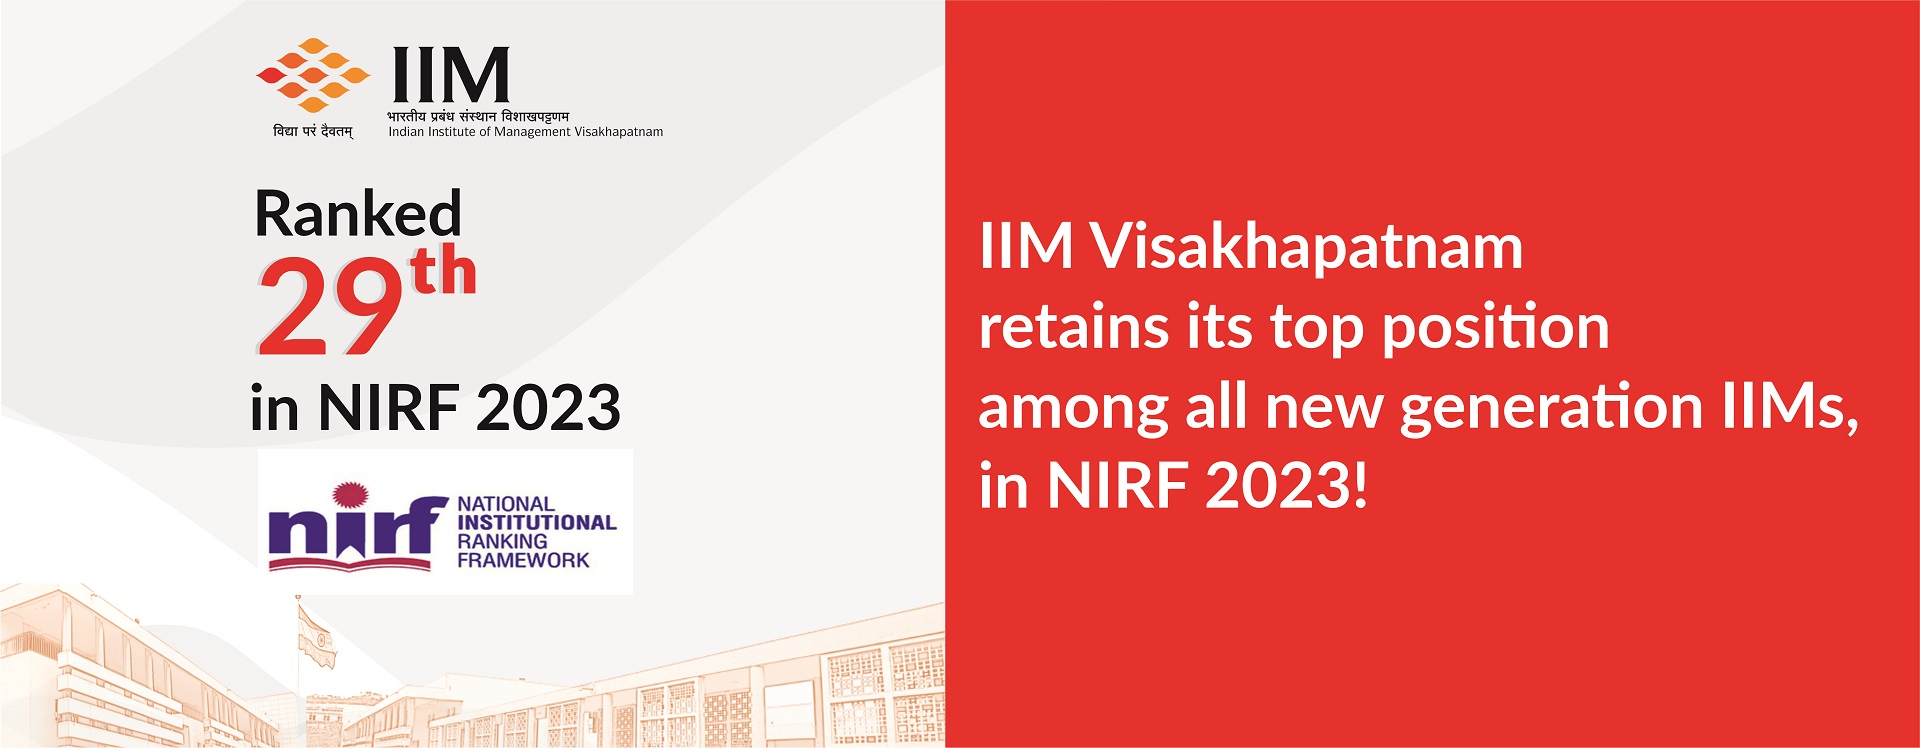 IIM Visakhapatnam Ranks High in the NIRF Rankings 2023